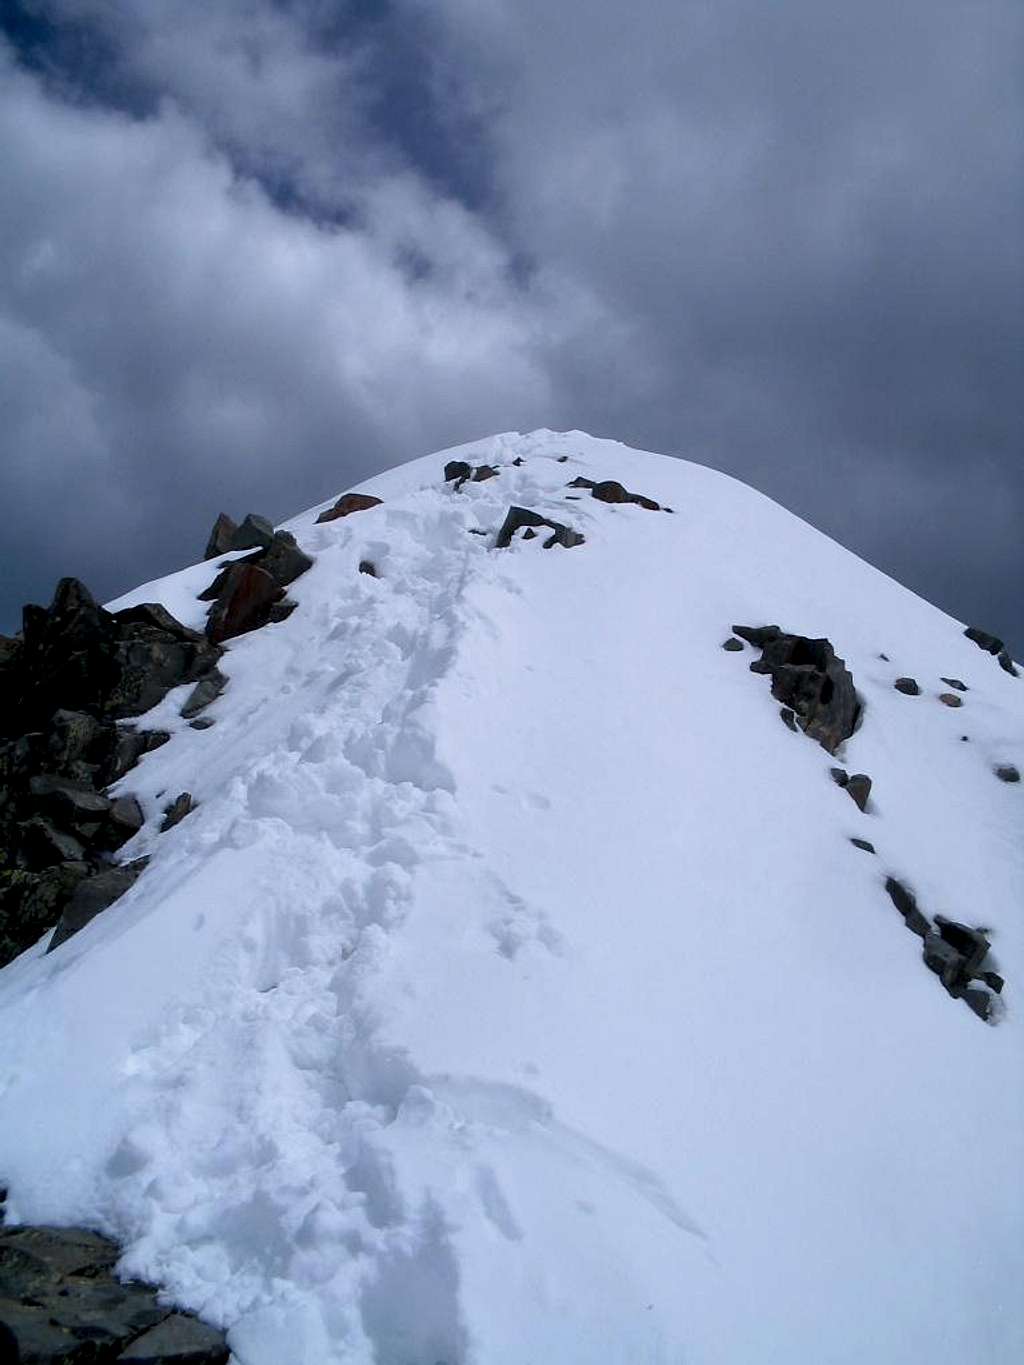 Final Ridge on Wilson Peak